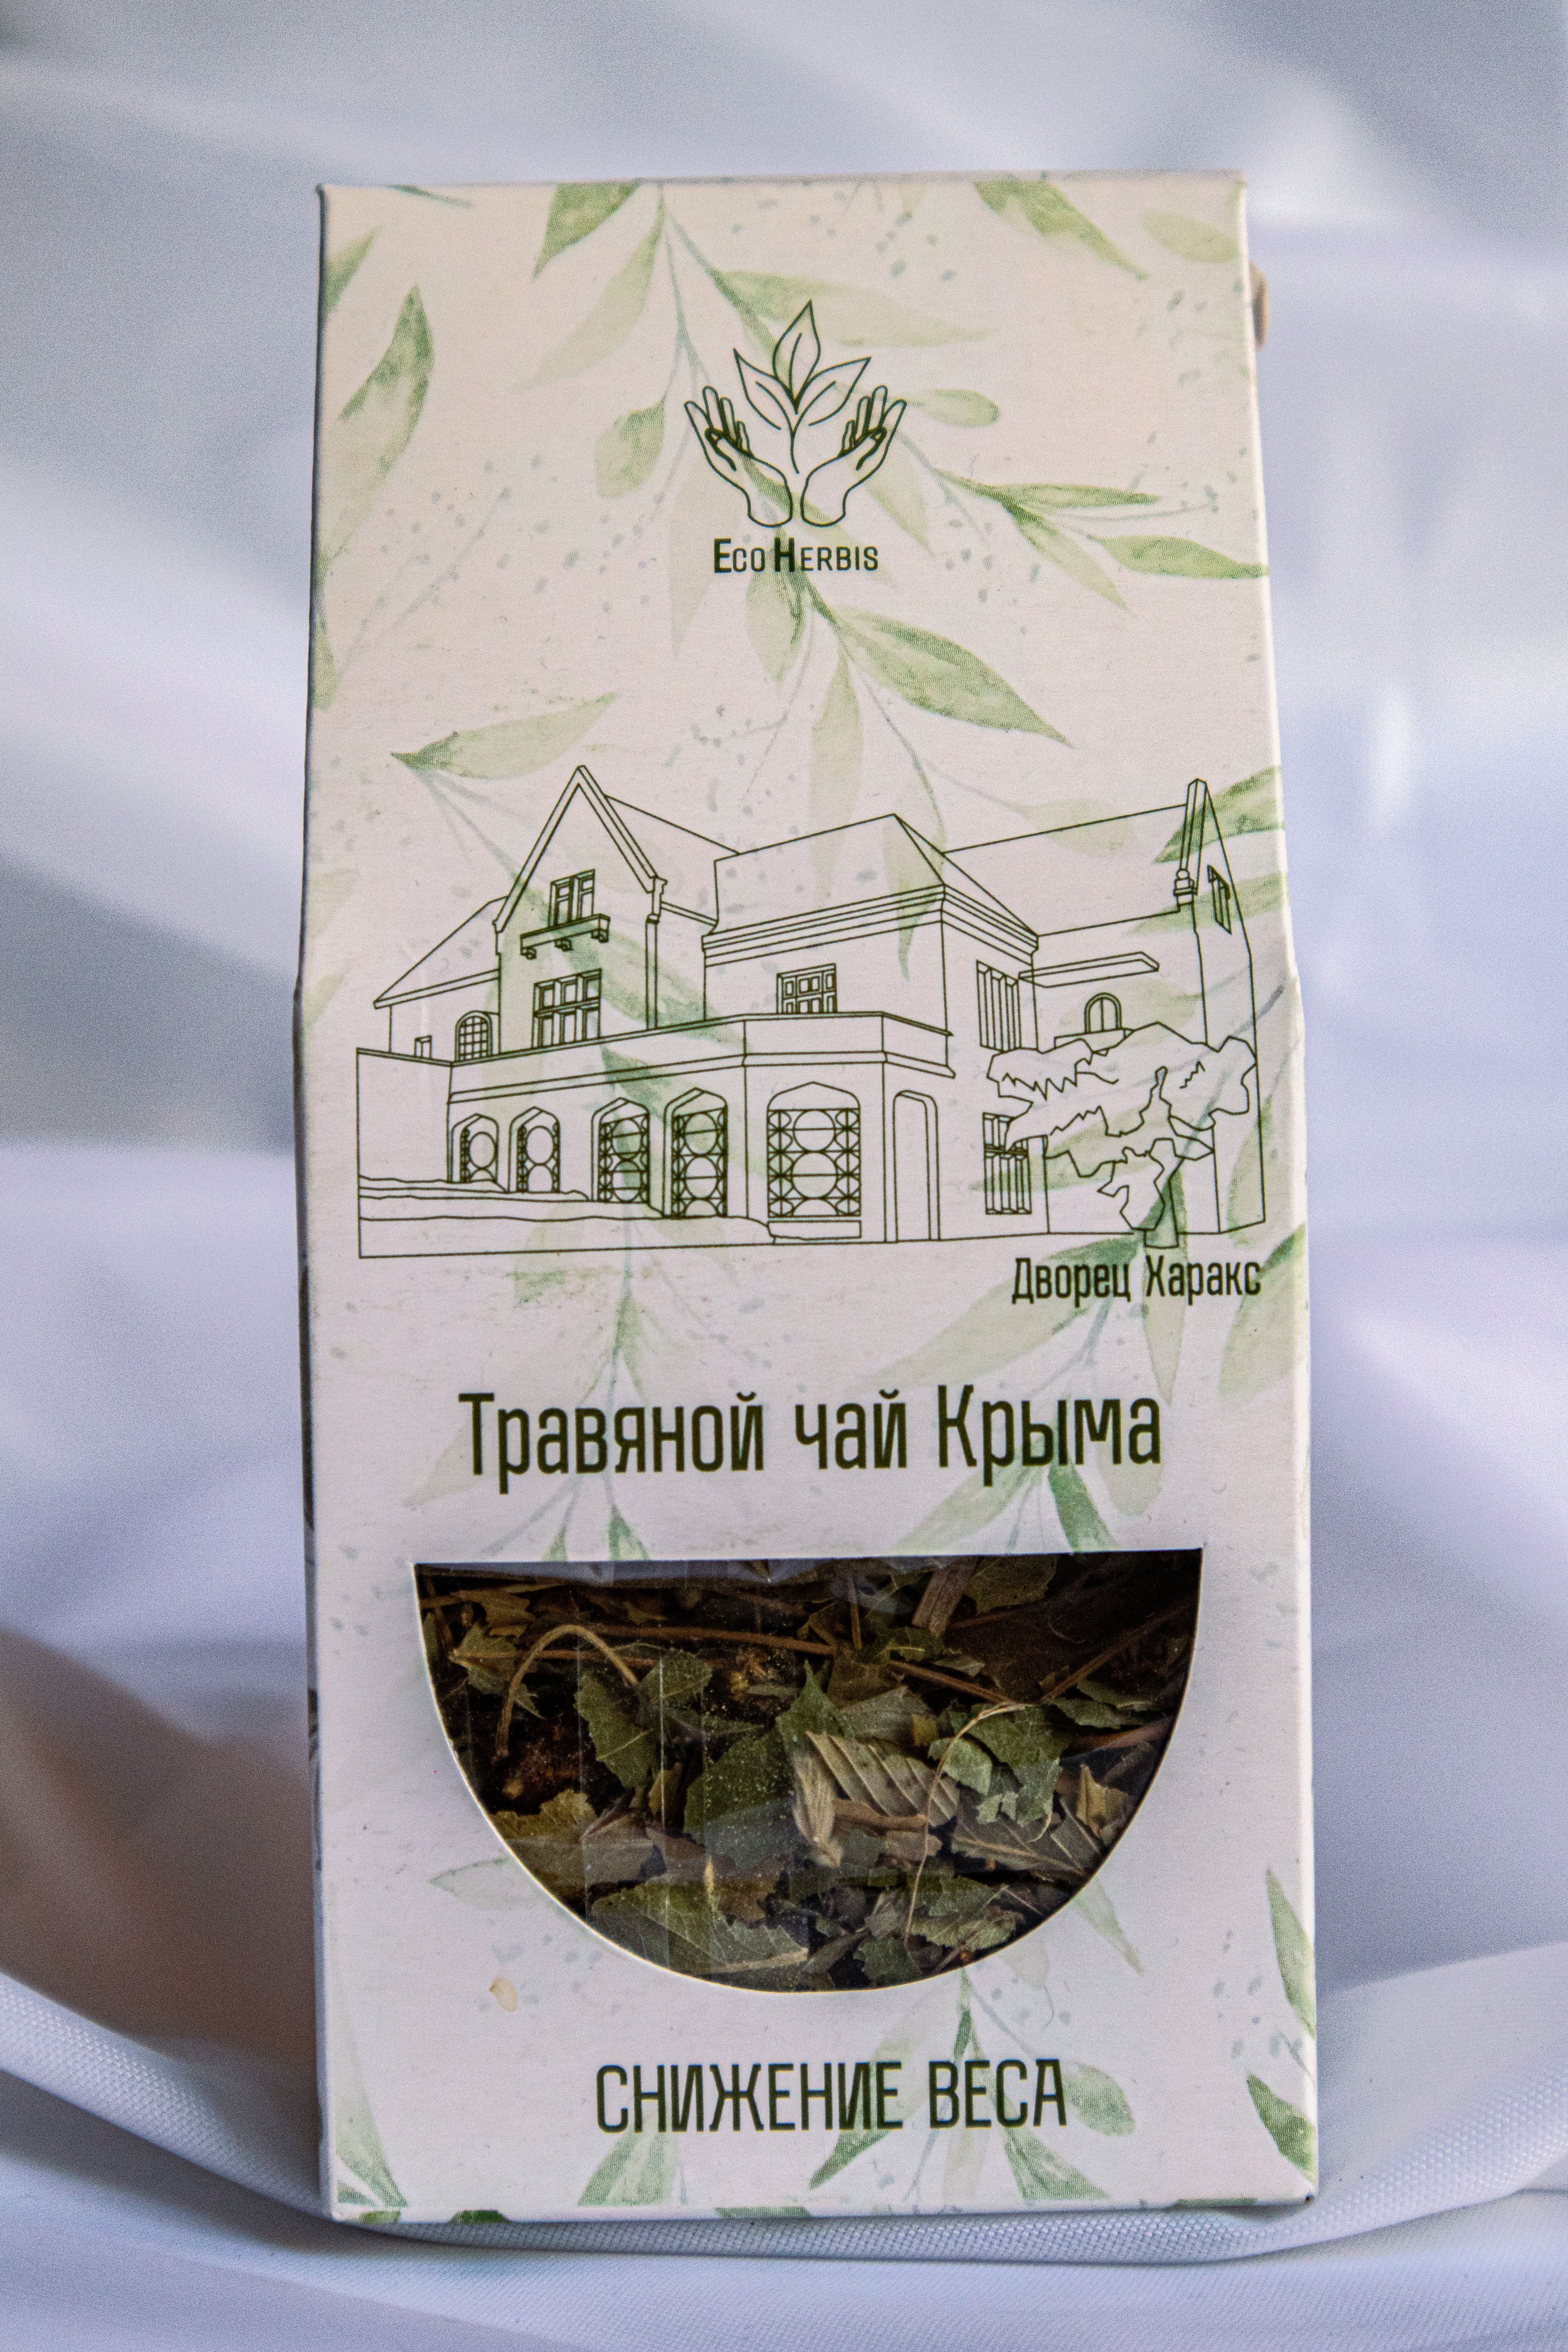 Чайный напиток Крымских трав  «Снижение веса» 35 гр.